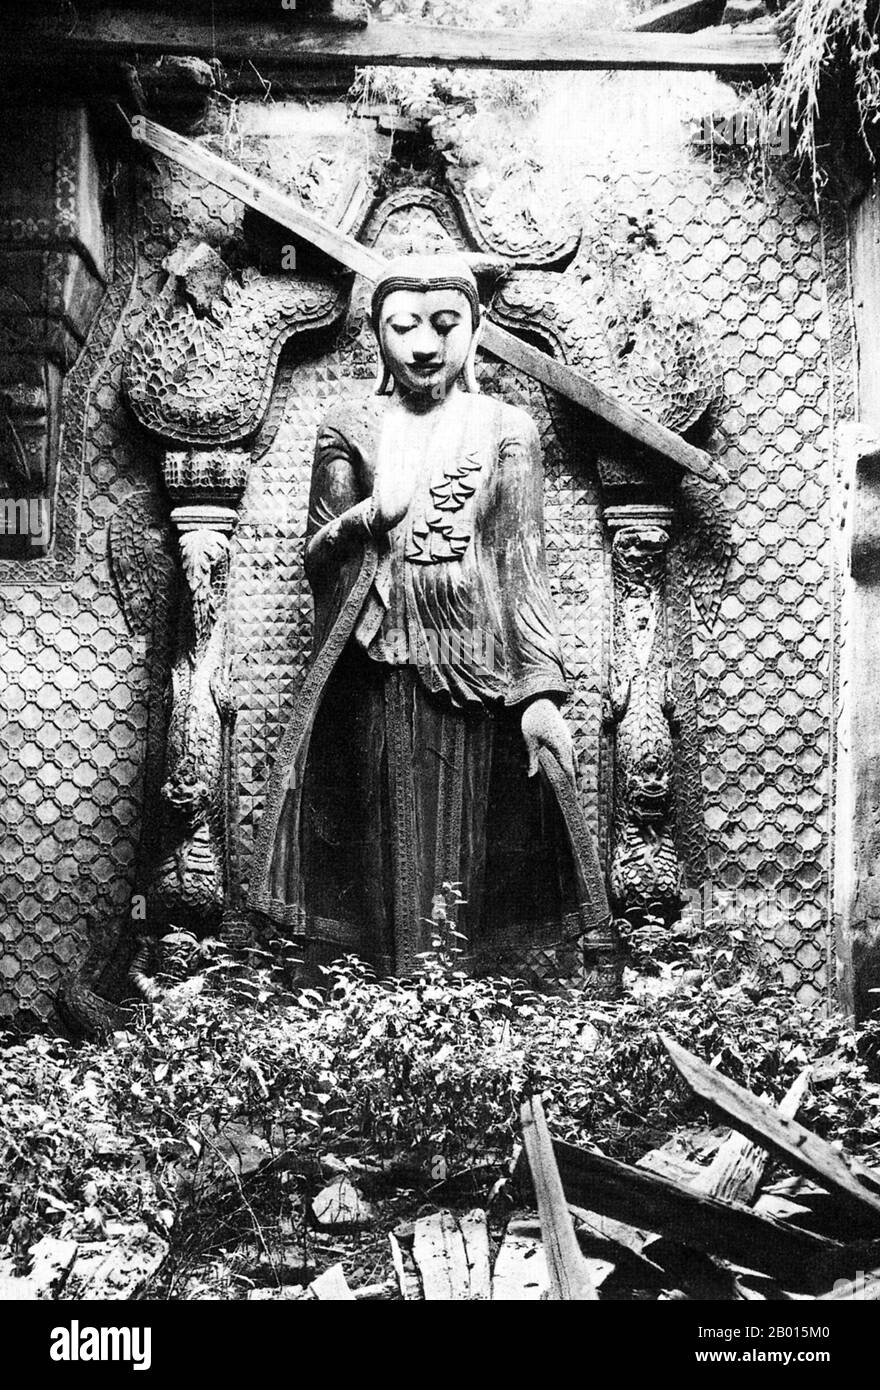 Burma/Myanmar: Eine wunderschöne Buddha-Statue steht in einem zerstörten Tempel in Amarapura, Zentral-Burma, c. 1920er Jahre. Pali Amarapura, die Stadt der Unsterblichkeit, war während der Konbaung-Dynastie im 18. Und 19. Jahrhundert drei Perioden lang die Hauptstadt Burmas, bevor sie schließlich 1857 von Mandalay, nur 11 km nördlich, abgelöst wurde. König Bodawpaya (1781–1819) aus der Konbaung-Dynastie gründete Amarapura 1783 als seine neue Hauptstadt, kurz nachdem er den Thron bestiegen hatte. 1795 empfing er die erste britische Botschaft in Burma von der British East India Company unter der Leitung von Michael Symes. Stockfoto